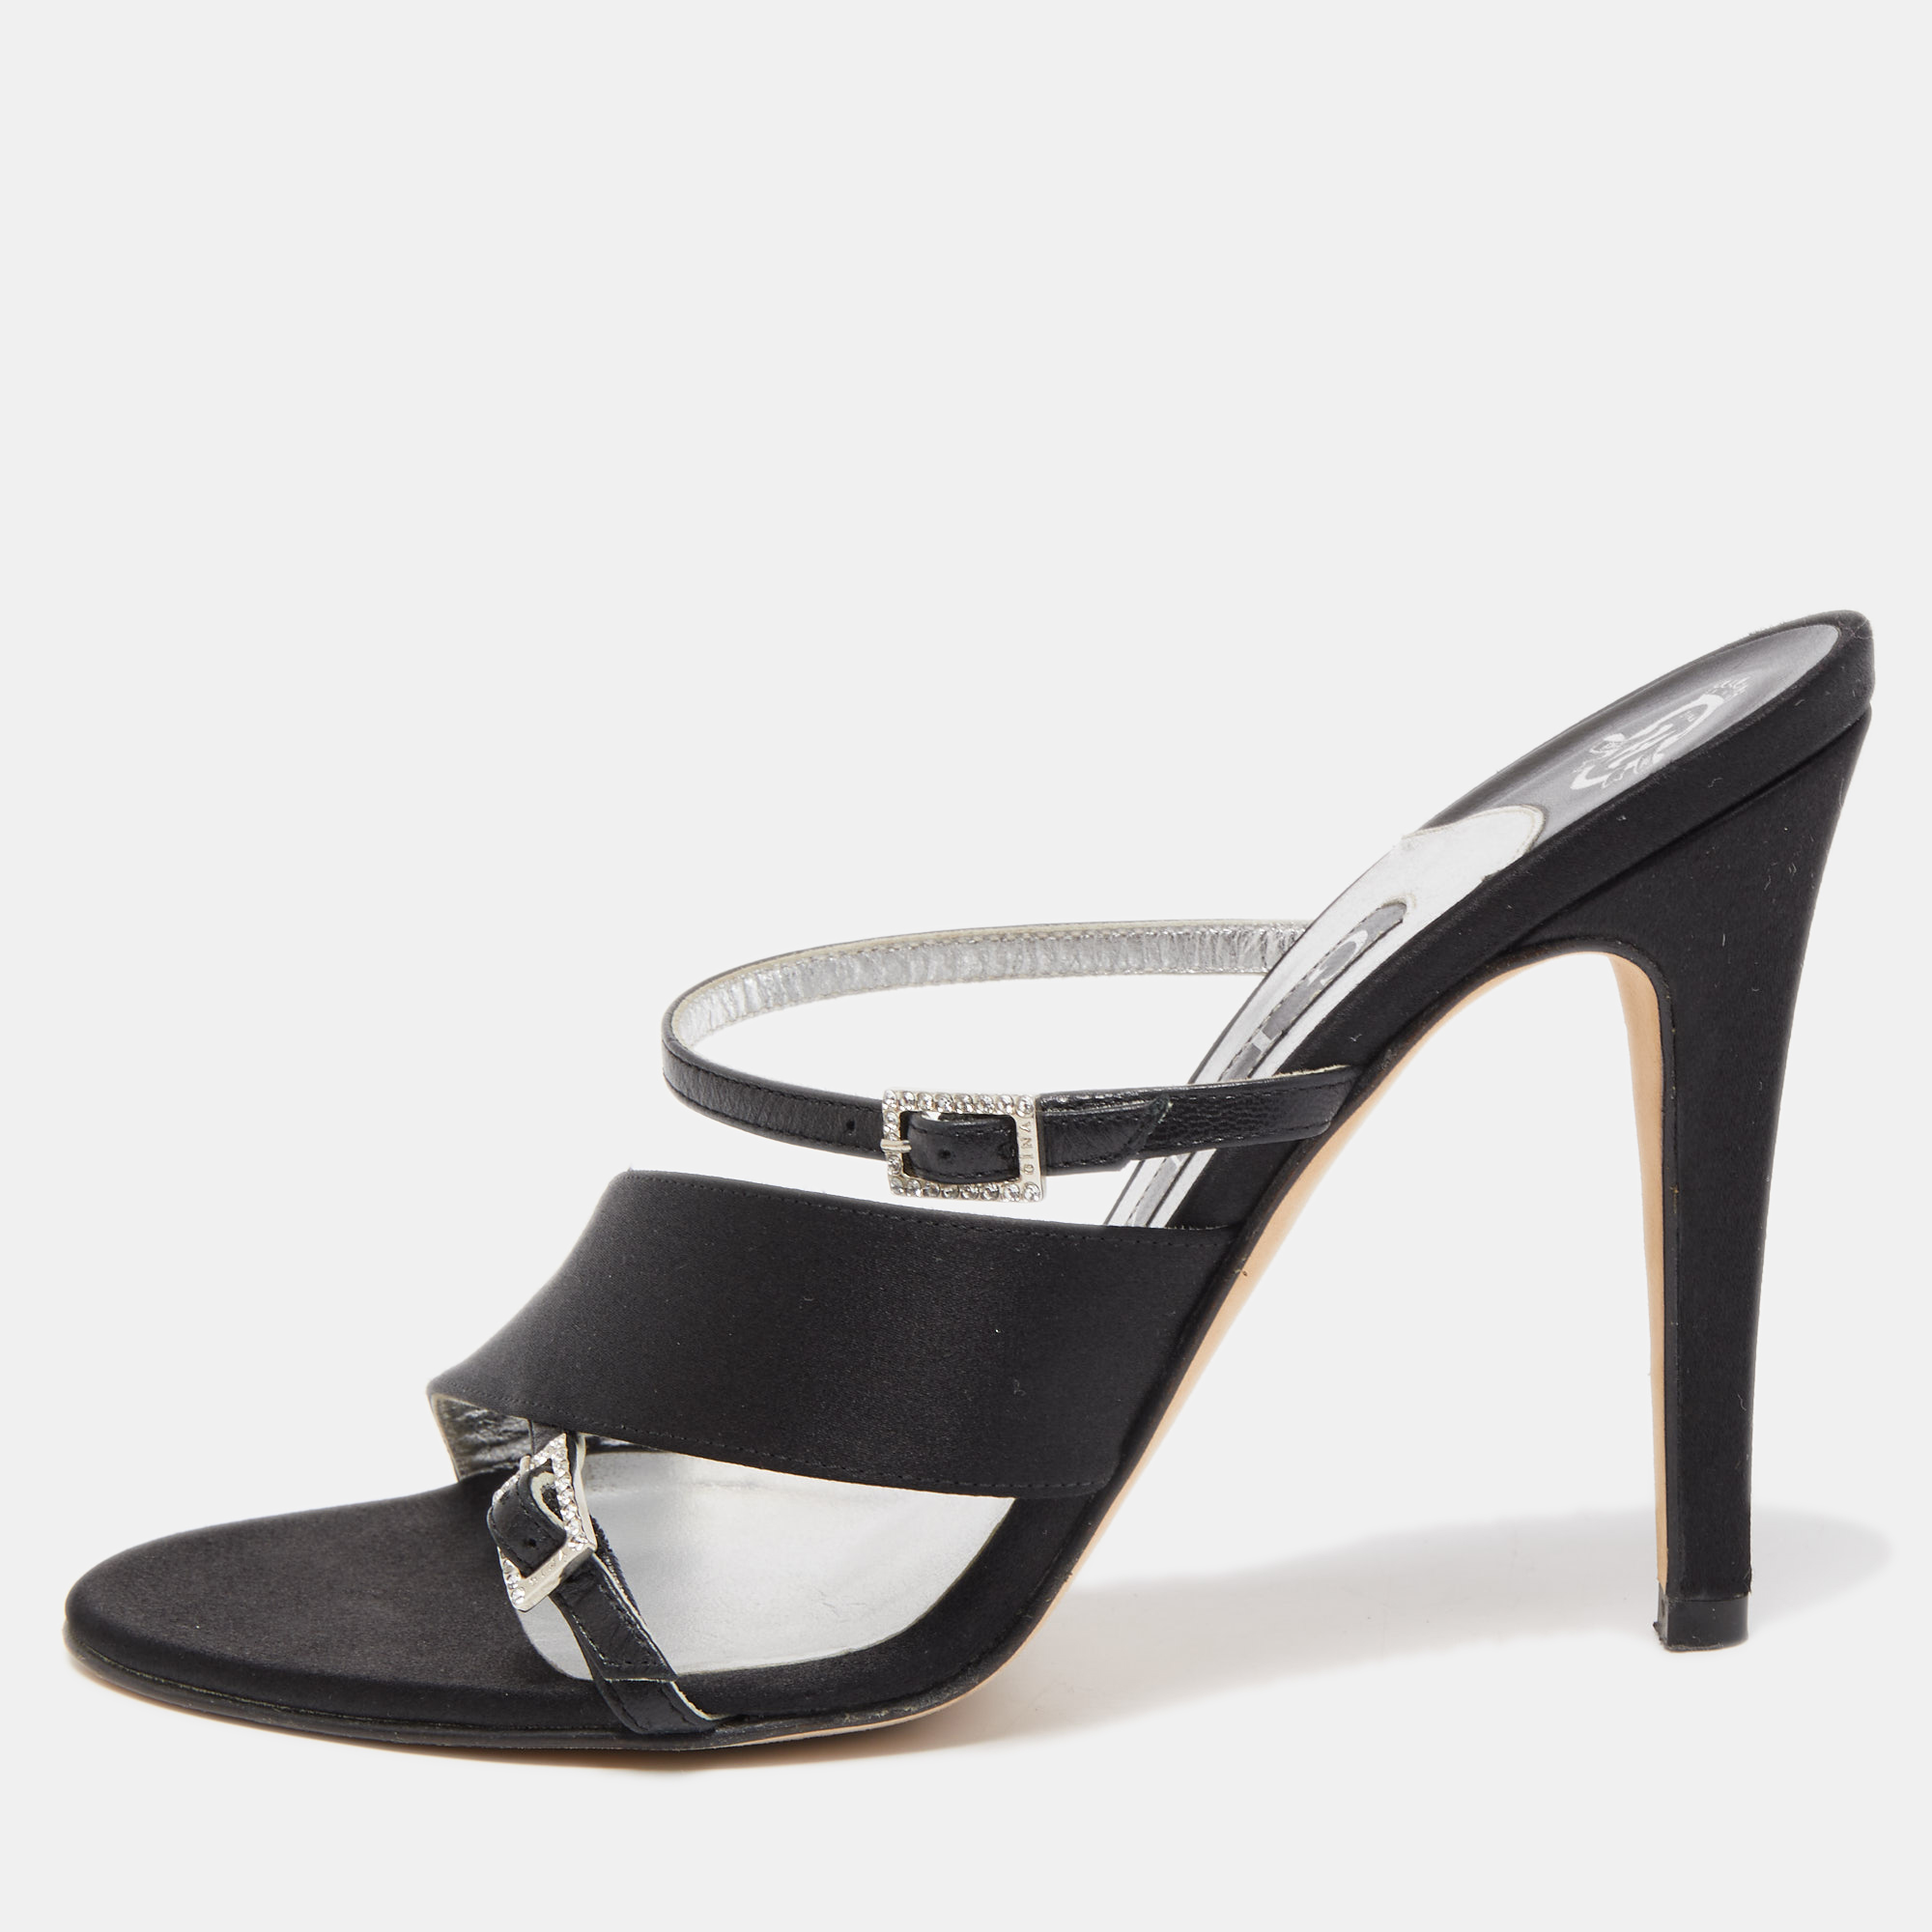 Gina Black Satin Crystal Embellished Cross Strap Slides Sandals Size 38.5